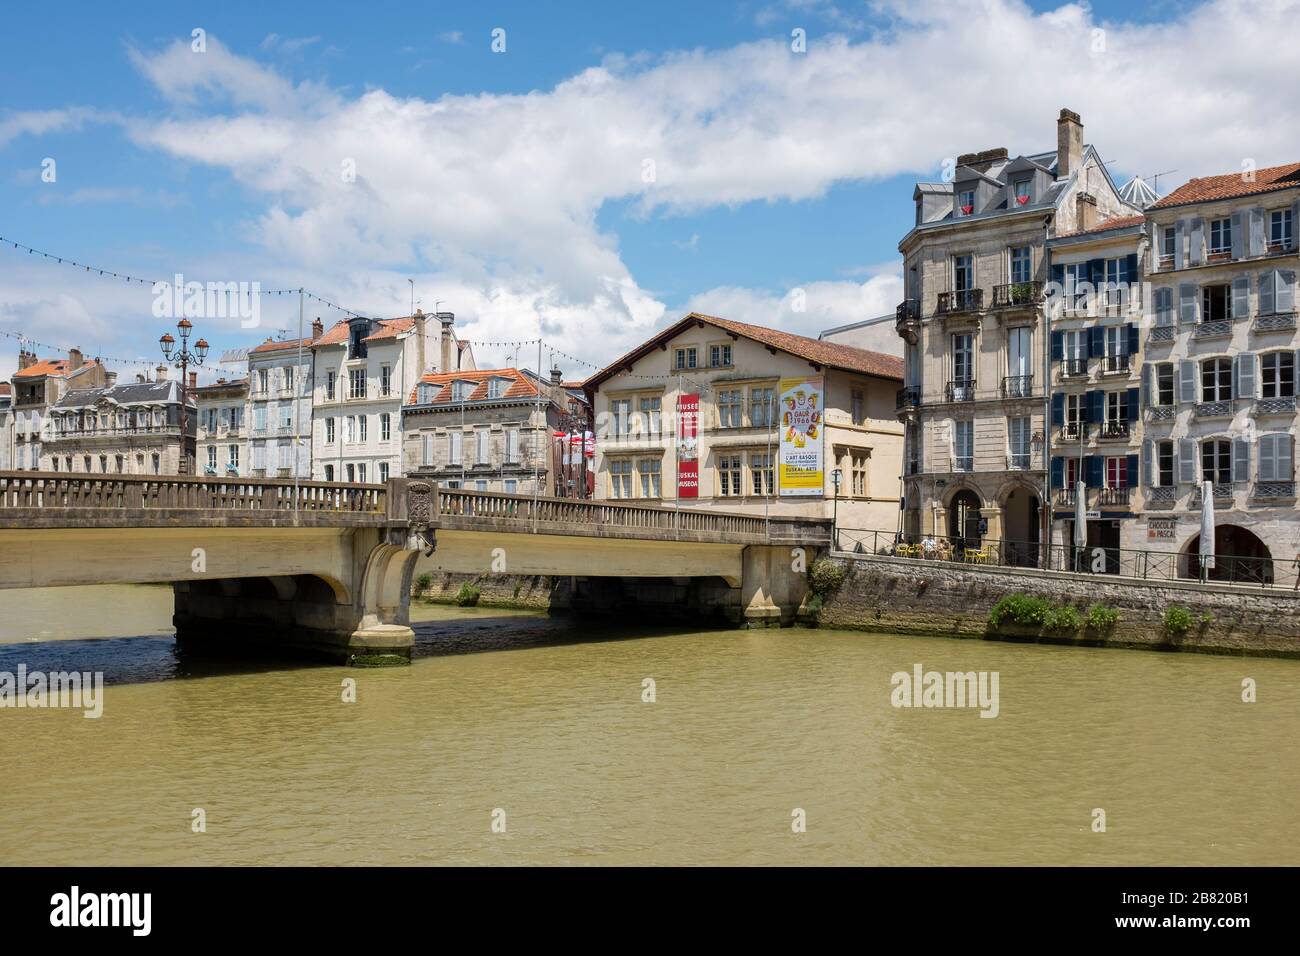 Le Pont Marengo (pont Marengo) s'étend sur la rivière Nive jusqu'au quartier de petit Bayonne à Bayonne, la capitale du Pays basque français Banque D'Images